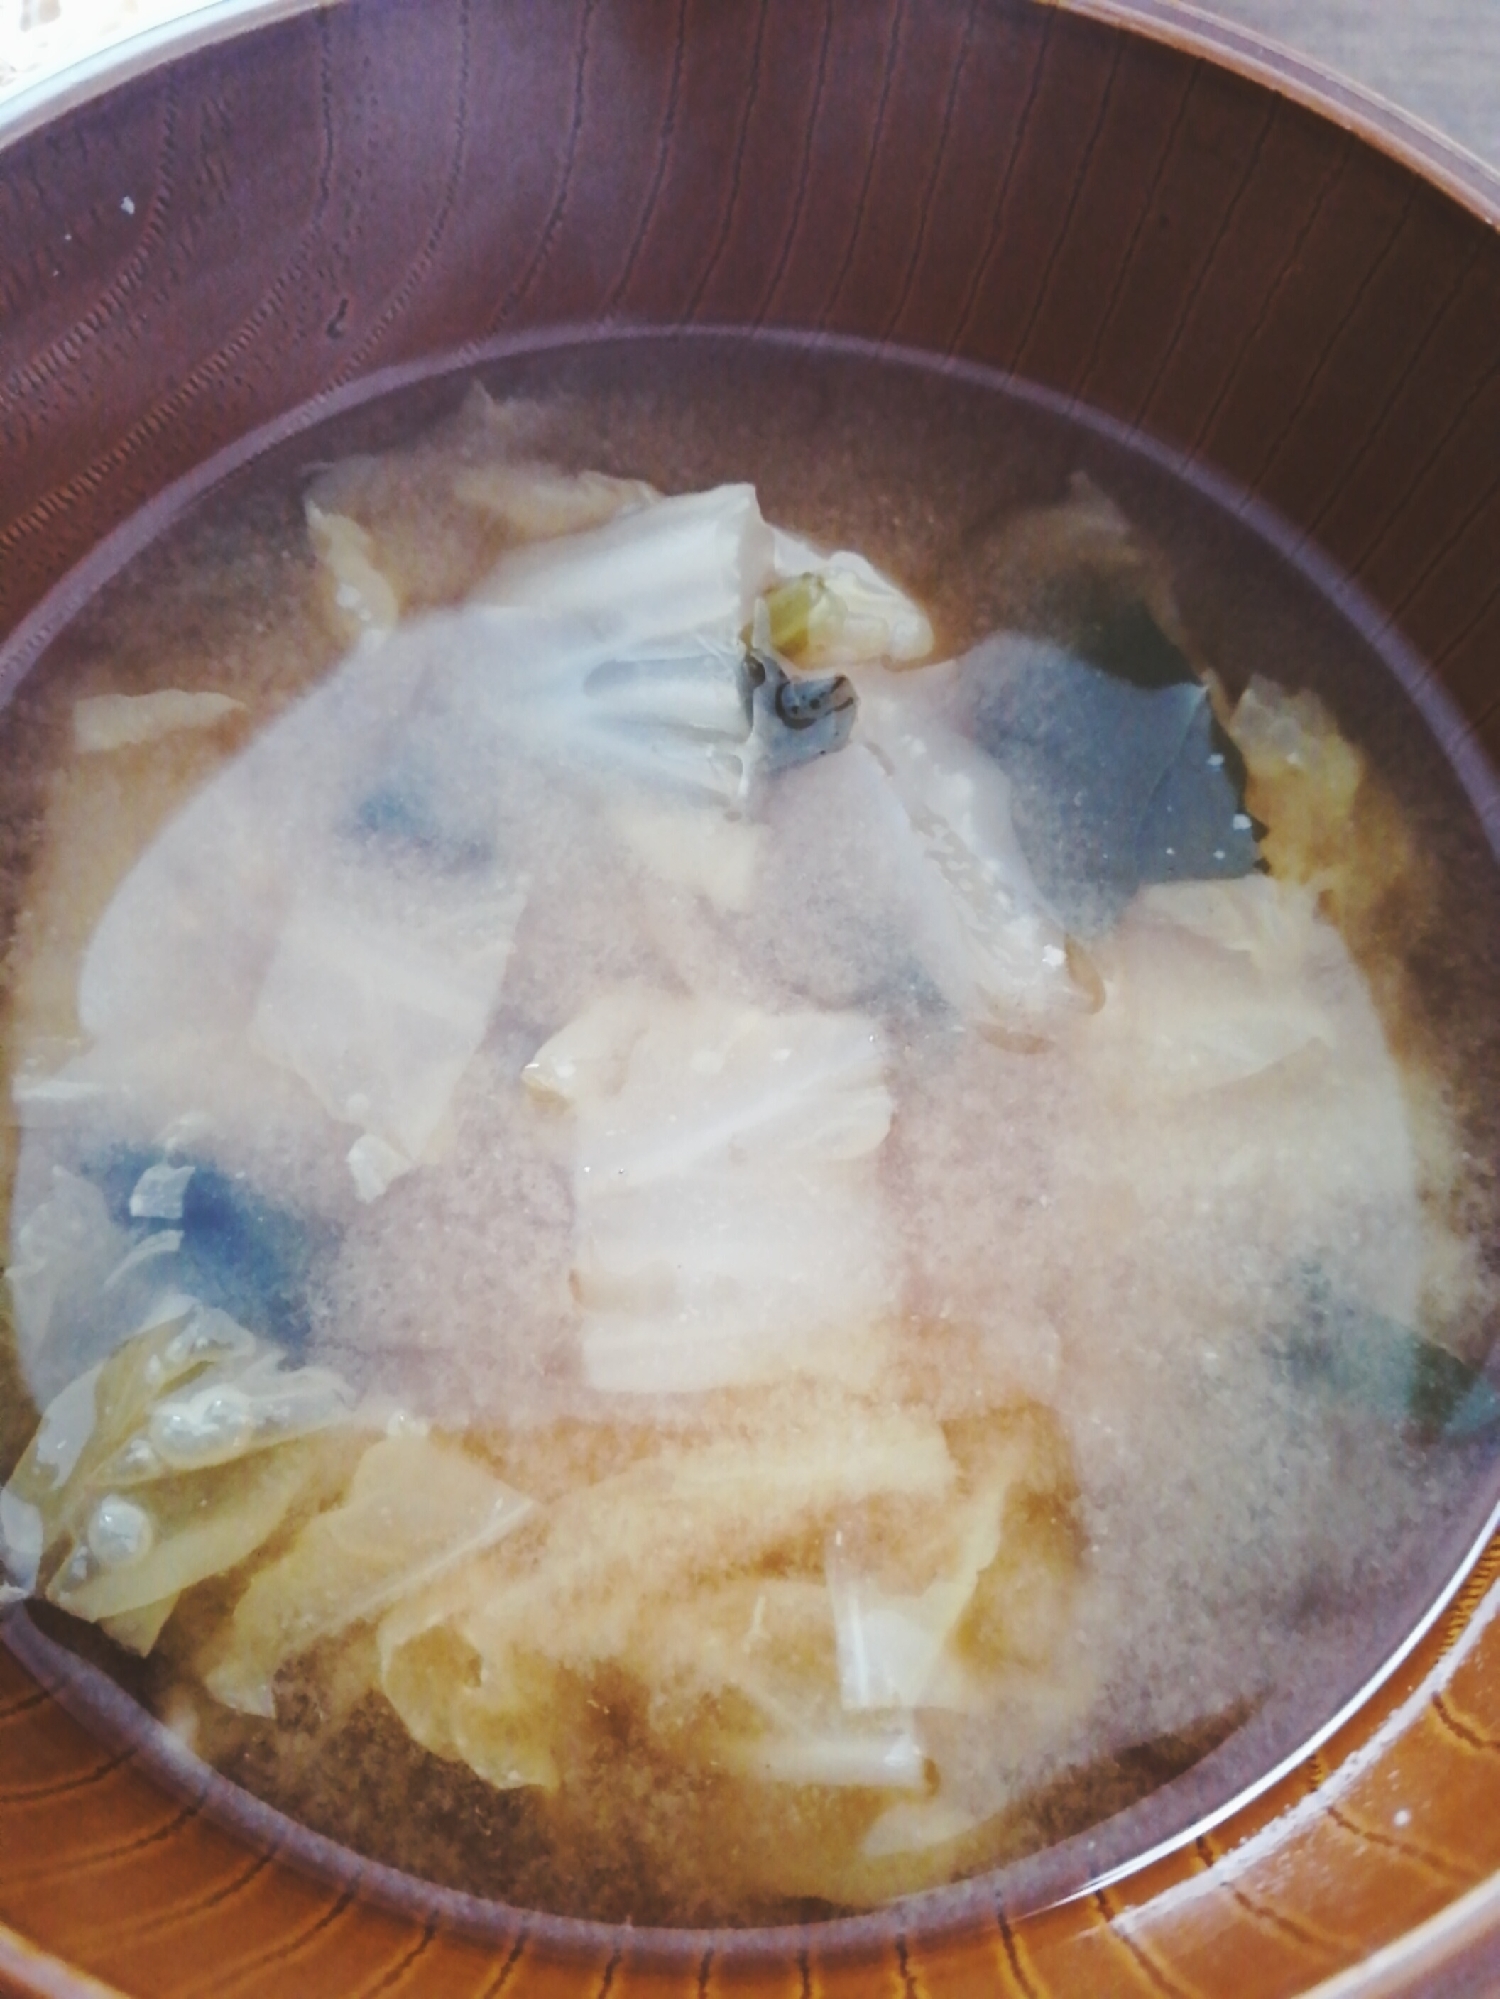 白菜わかめ菊芋の味噌汁